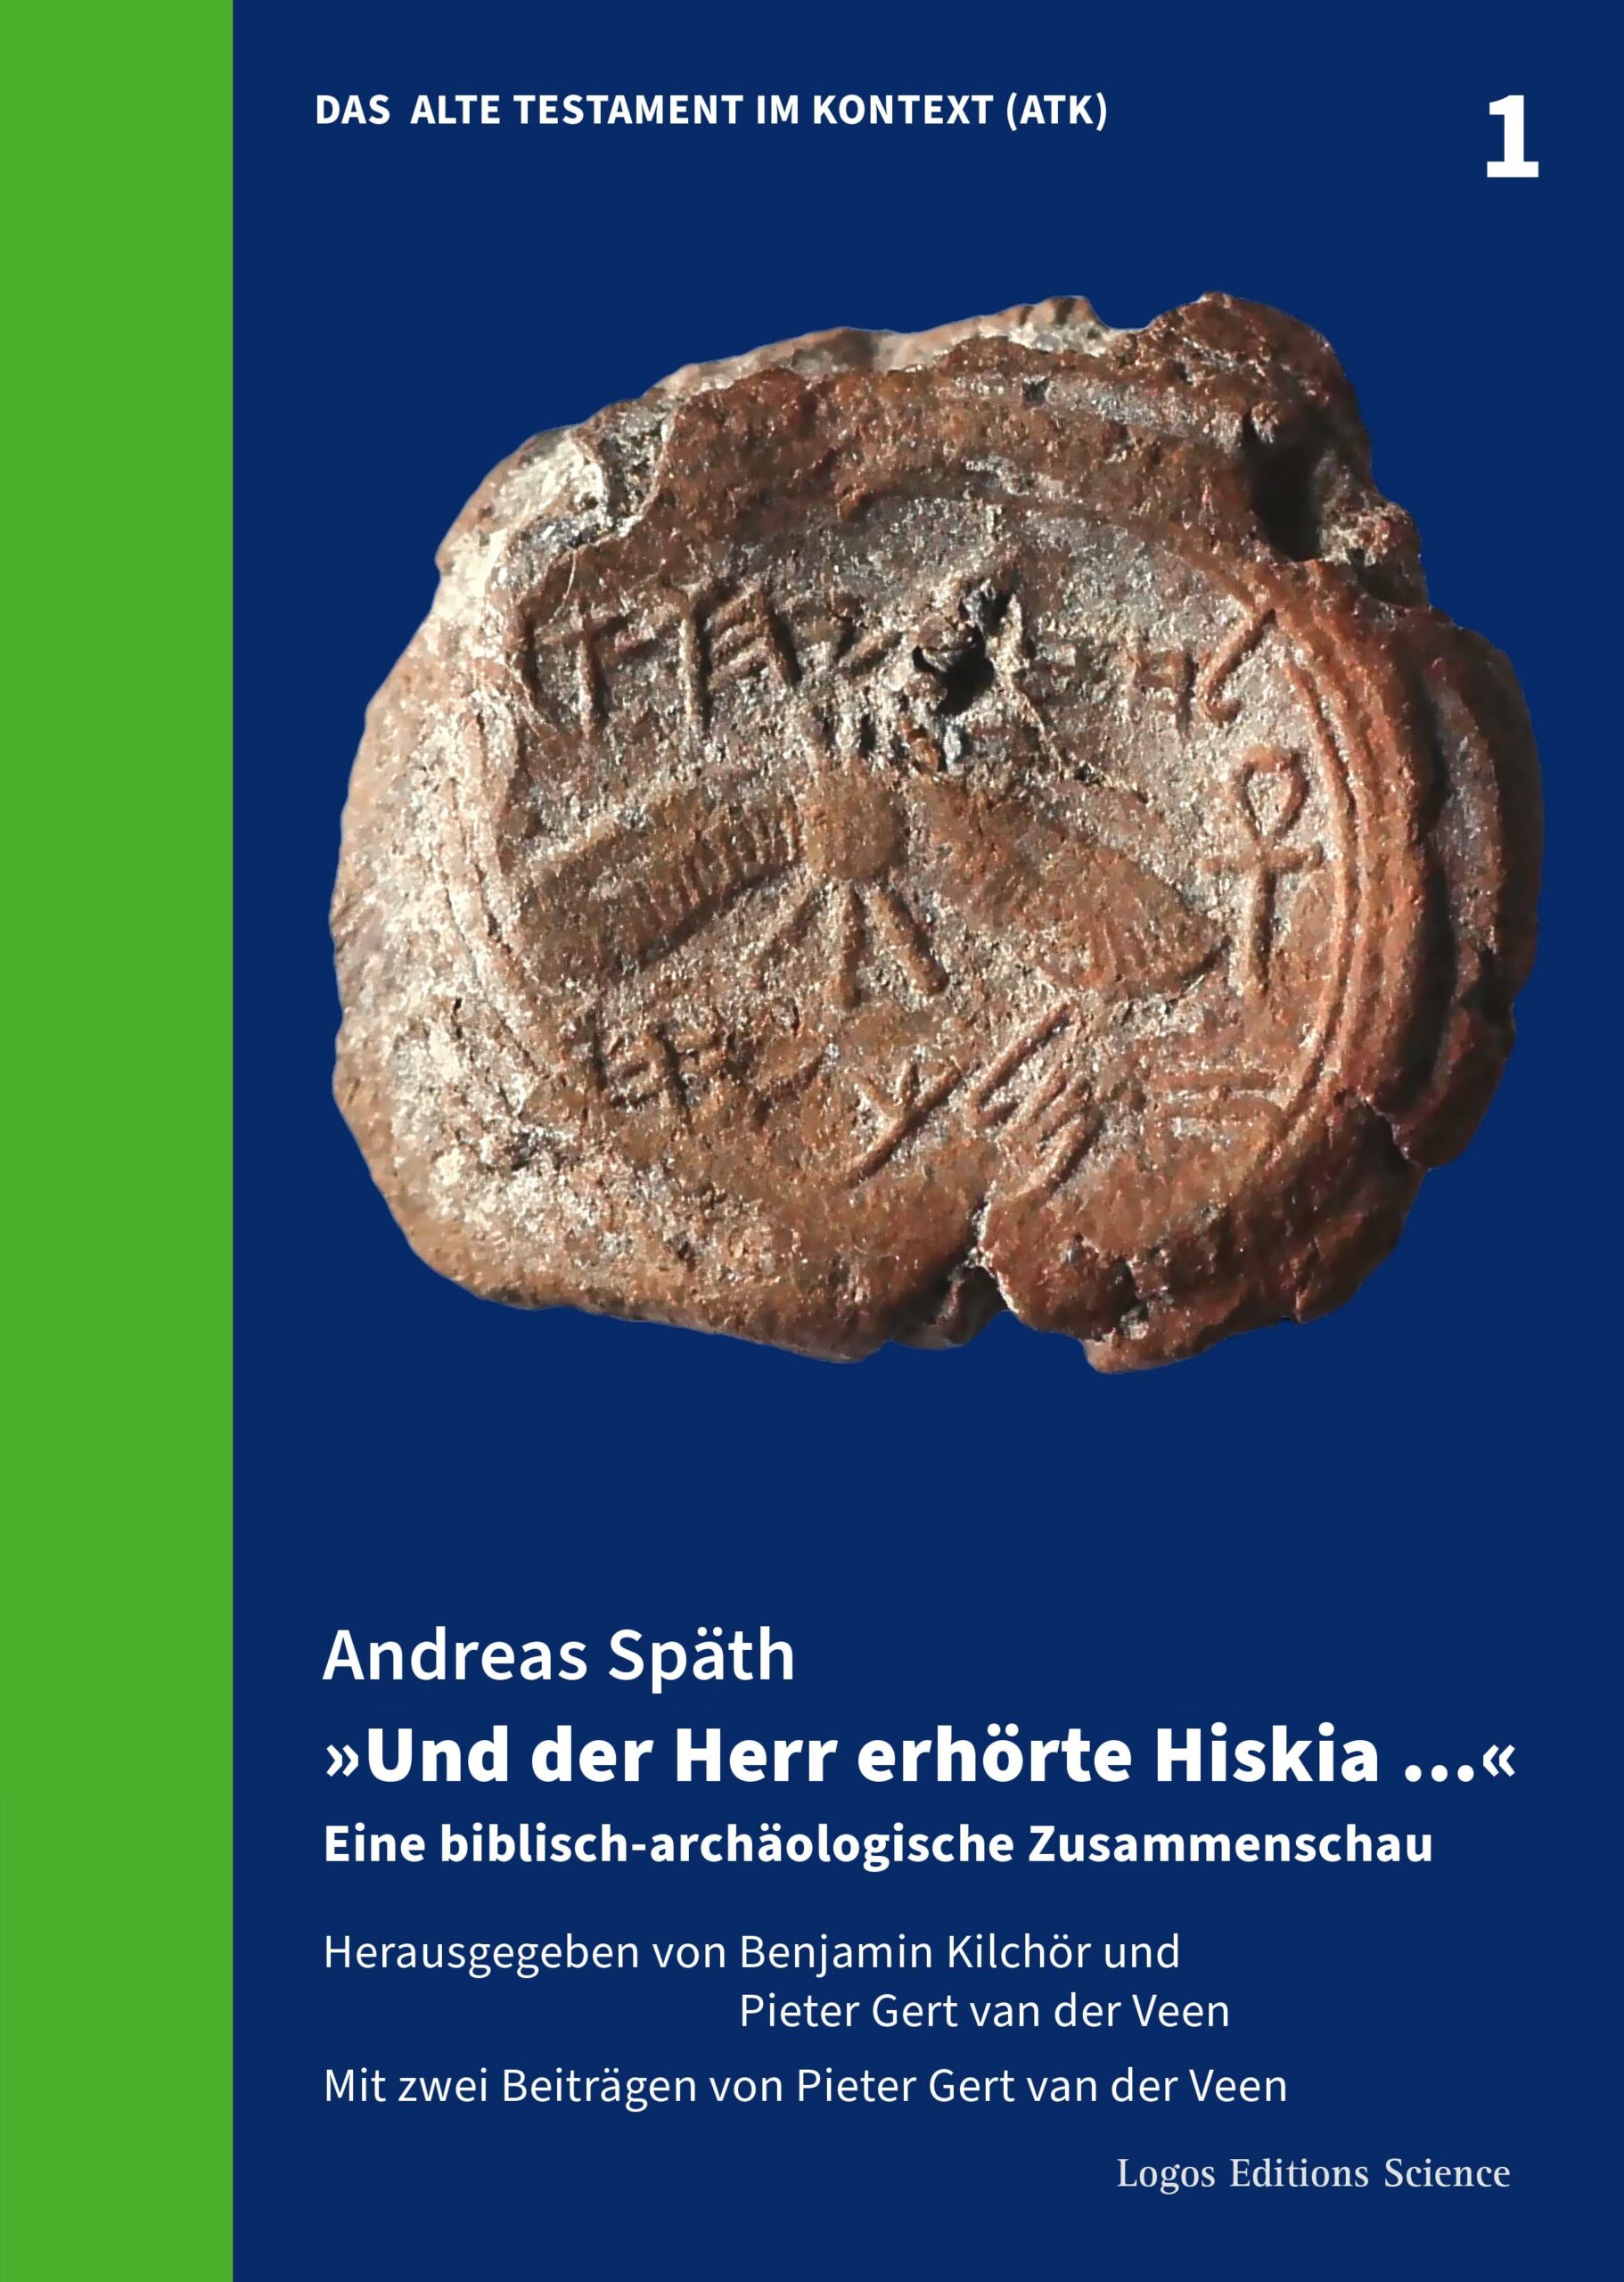 Andreas Späth: „Und der Herr erhörte Hiskia …“ – Eine biblisch-archäologische Zusammenschau